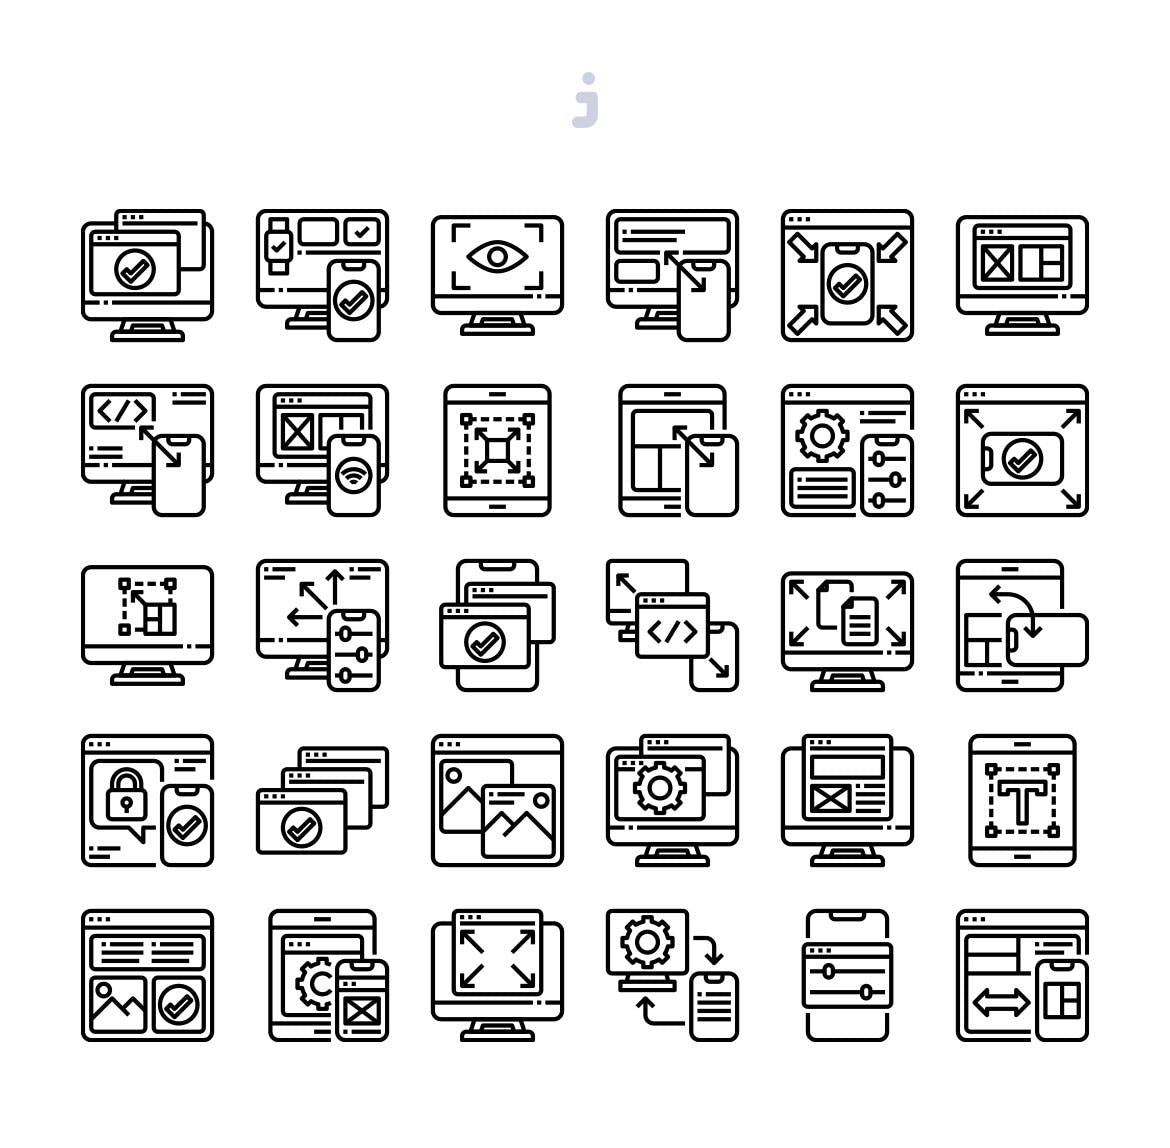 30枚响应式设计主题矢量图标素材 30 Responsive Design Icons插图(2)